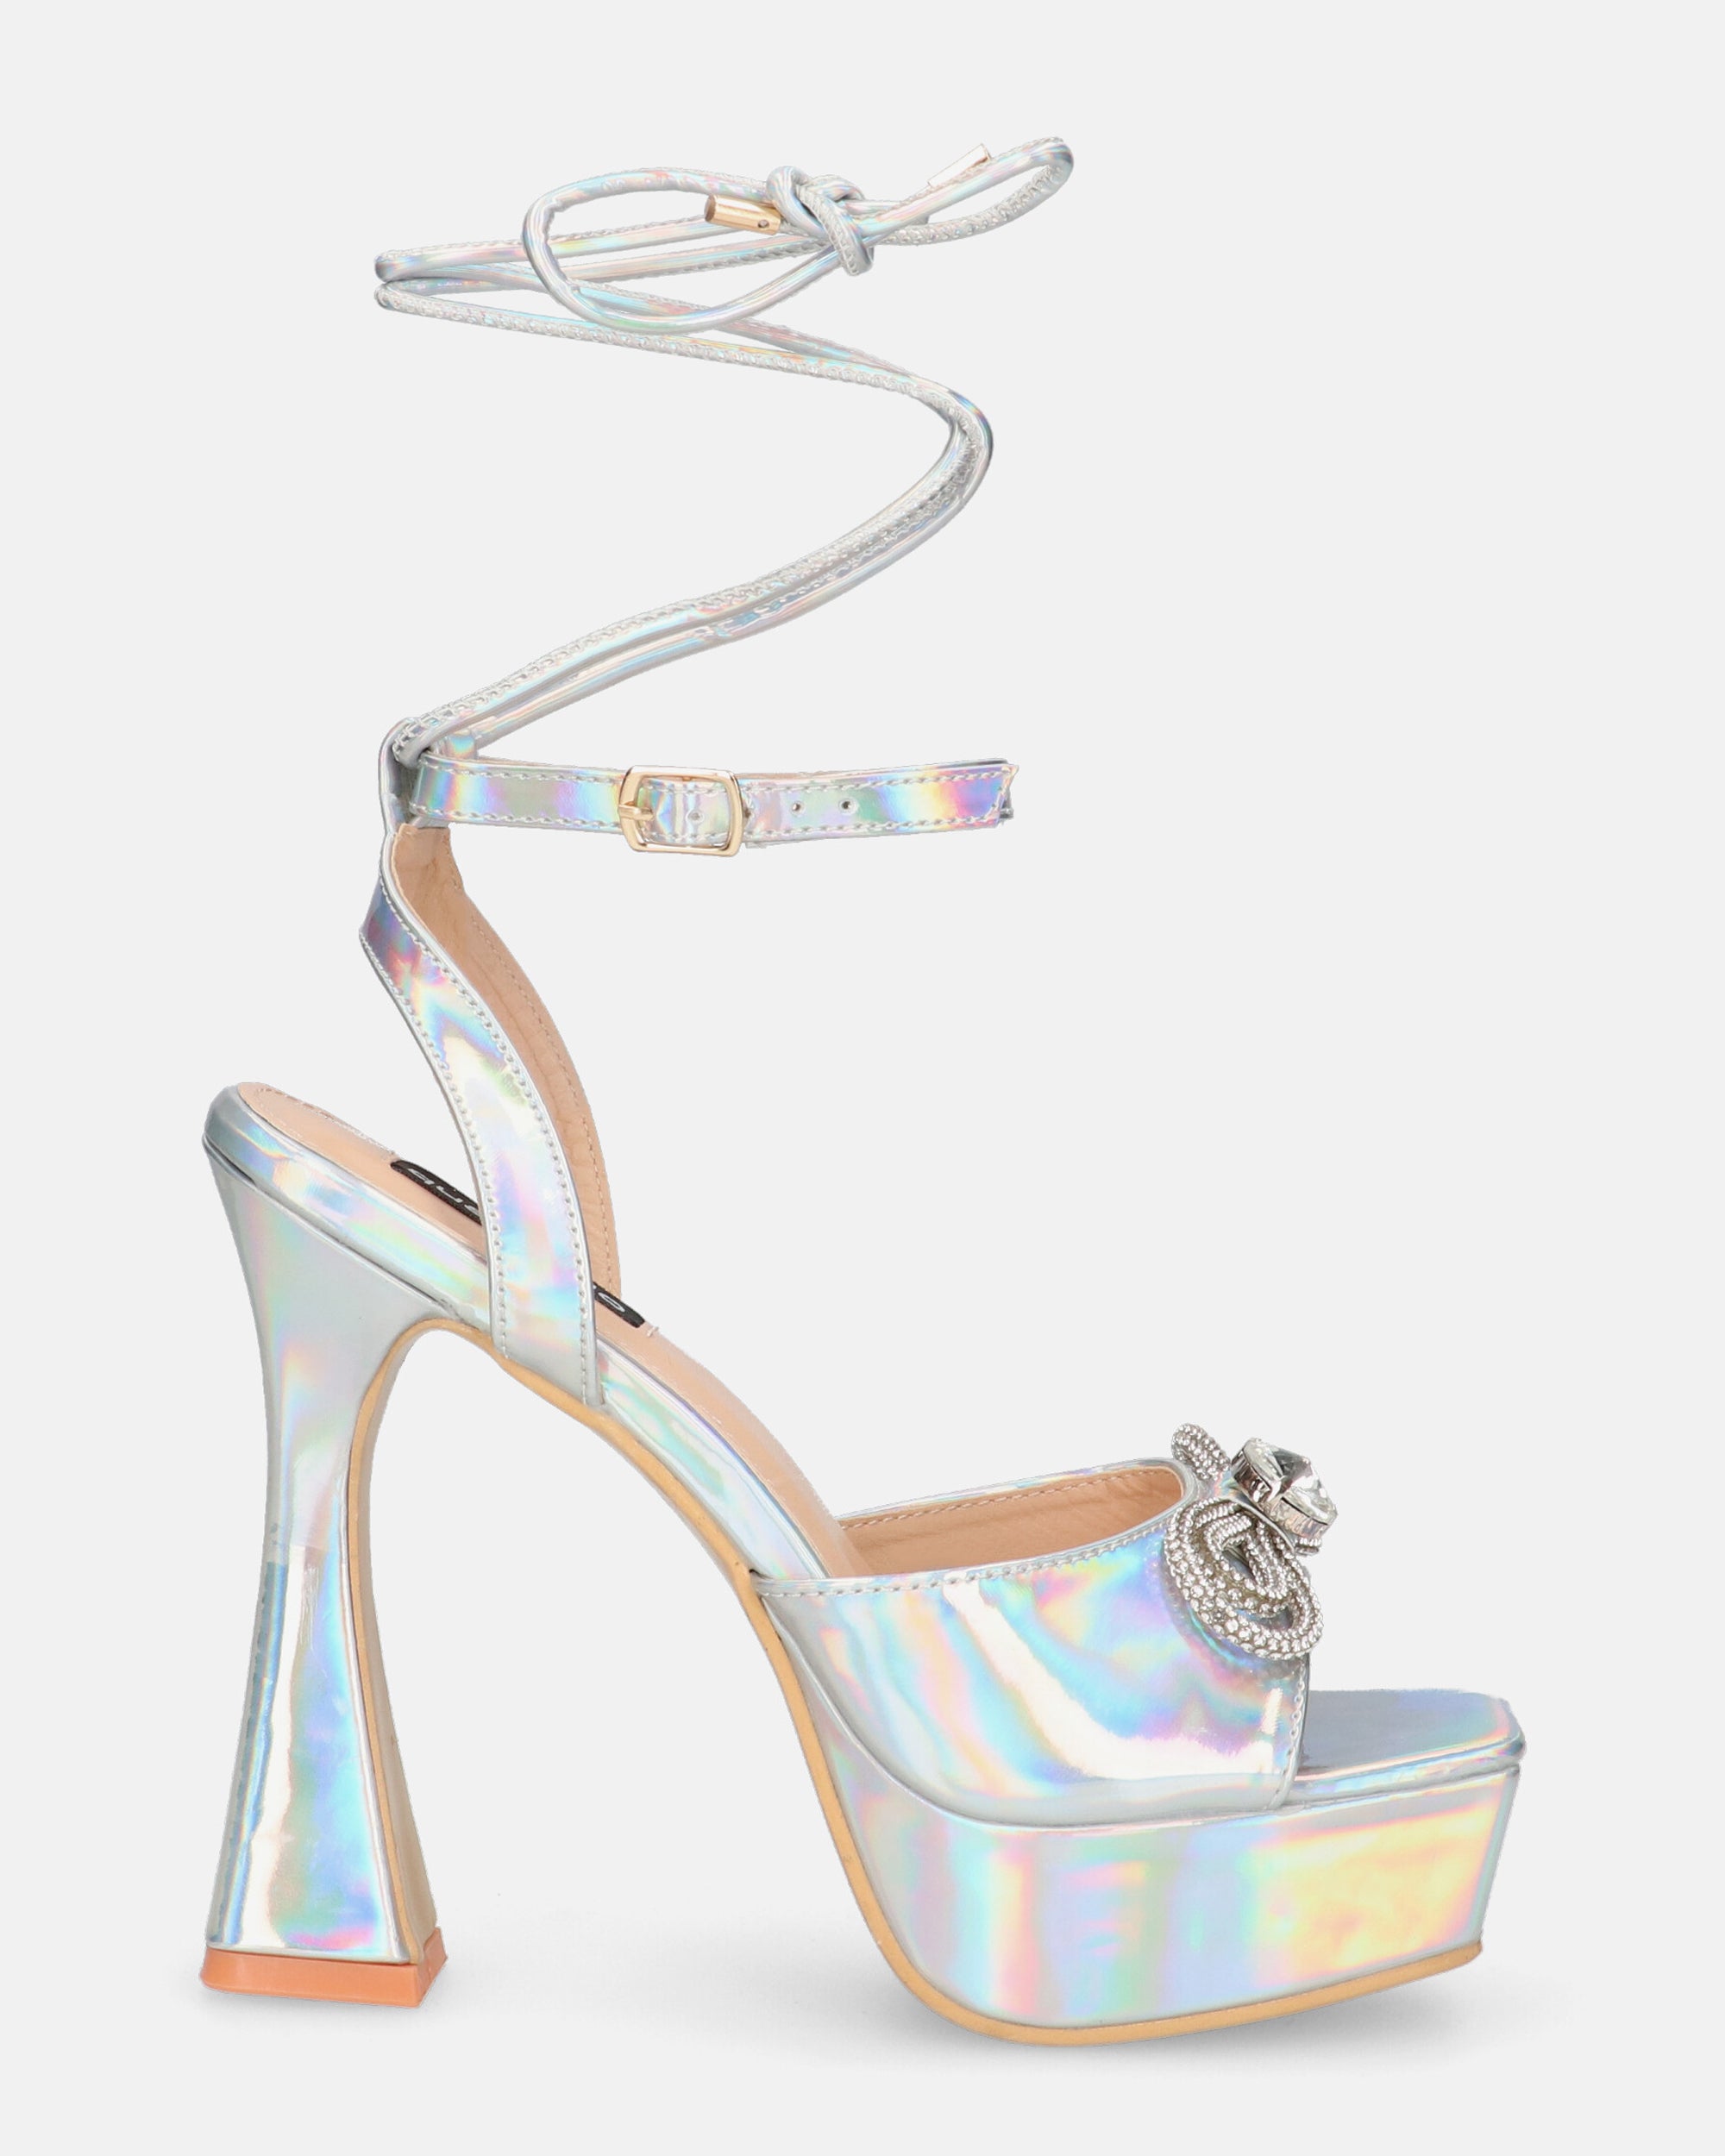 HOLLY - zapatos de tacón en glassy con efecto opalescente y pedrería